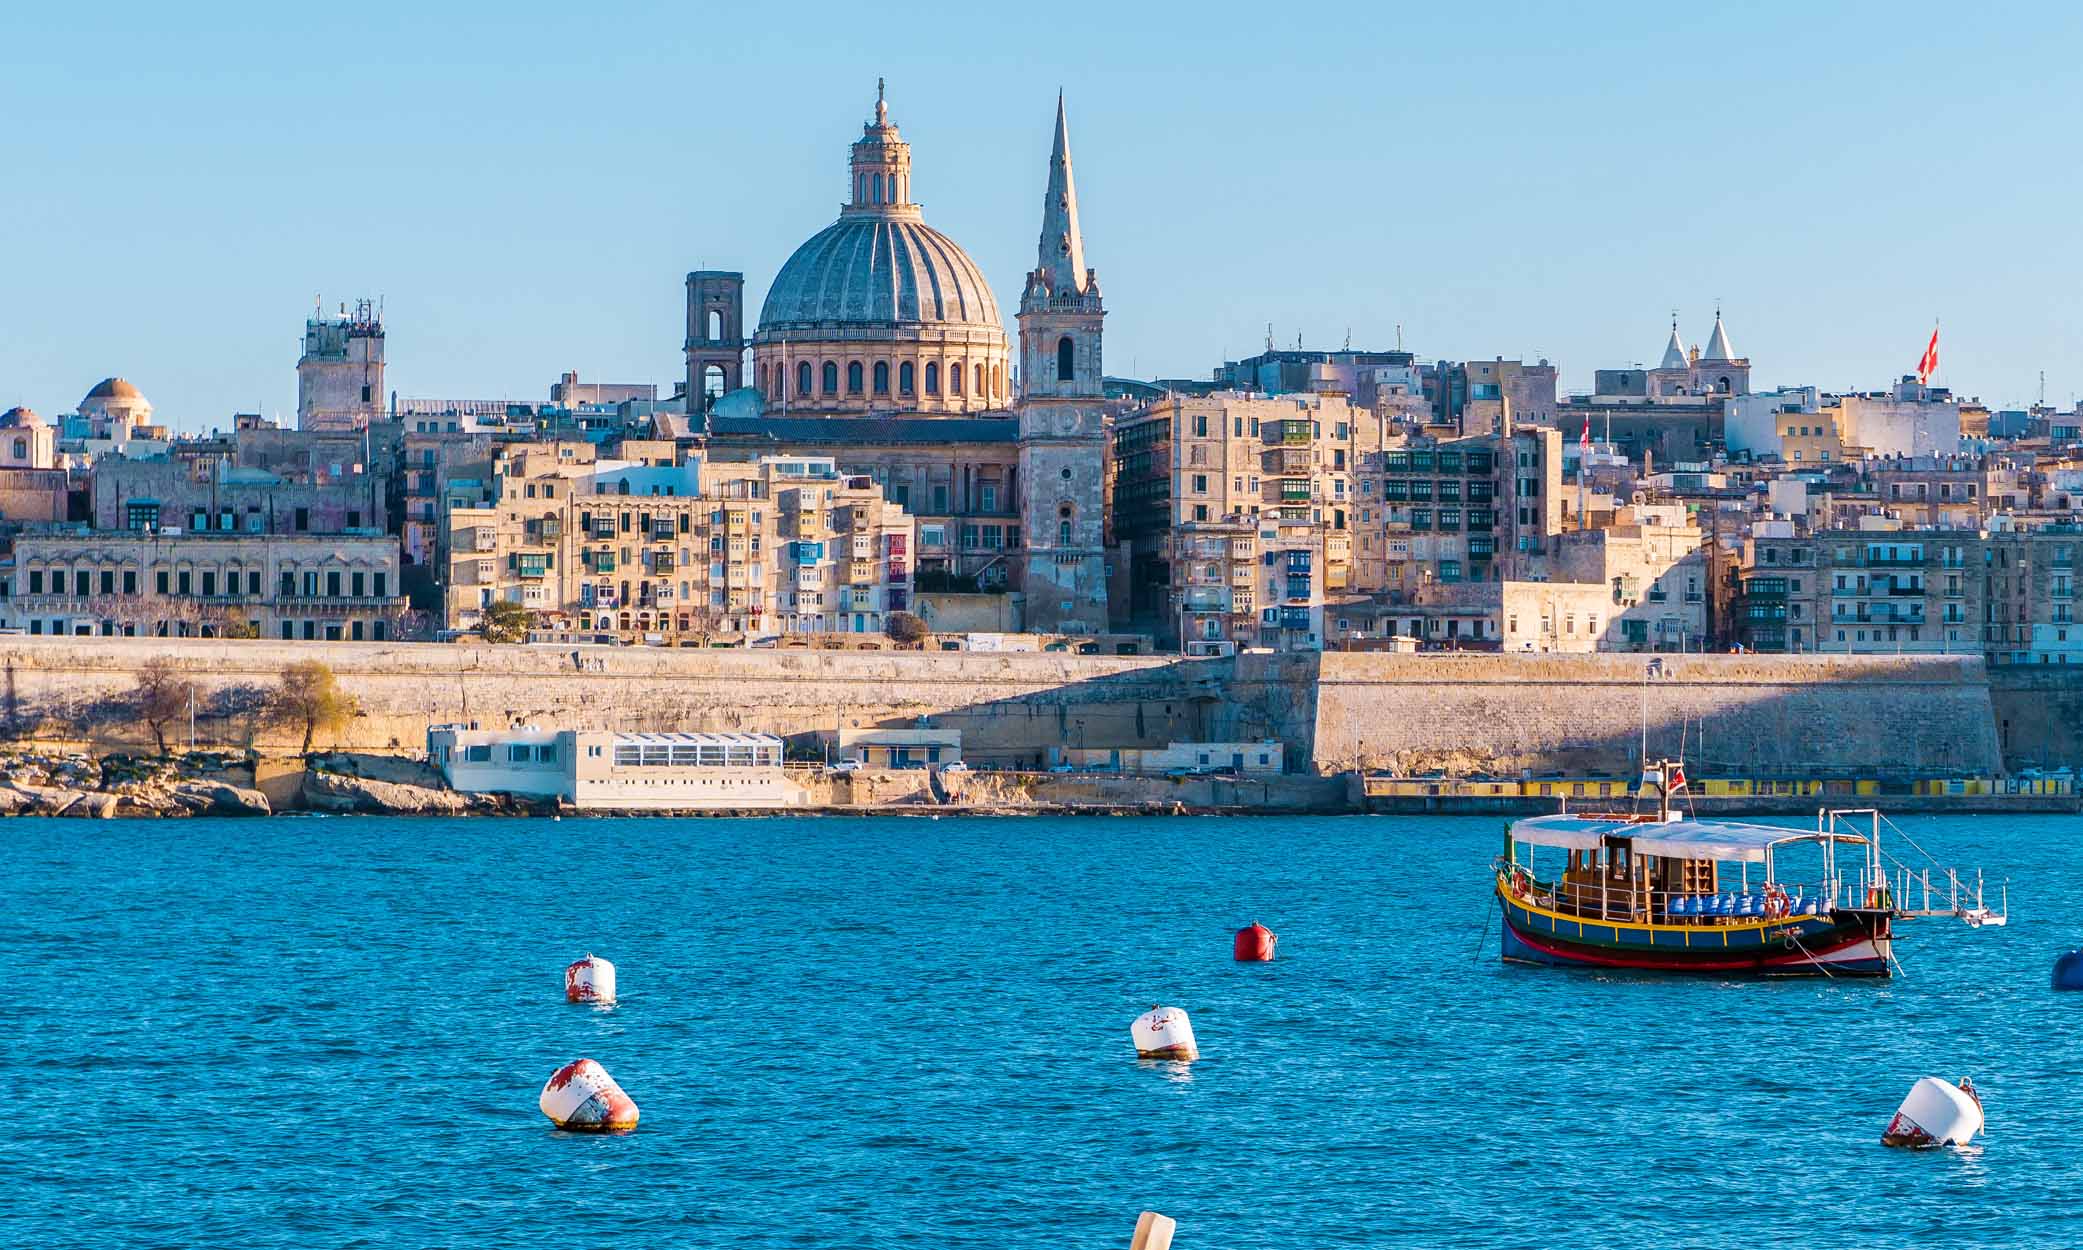 Malta İstisnai Yatırımcı Vatandaşlığı yoluyla Malta pasaportu almaya hak kazanabilirsiniz.